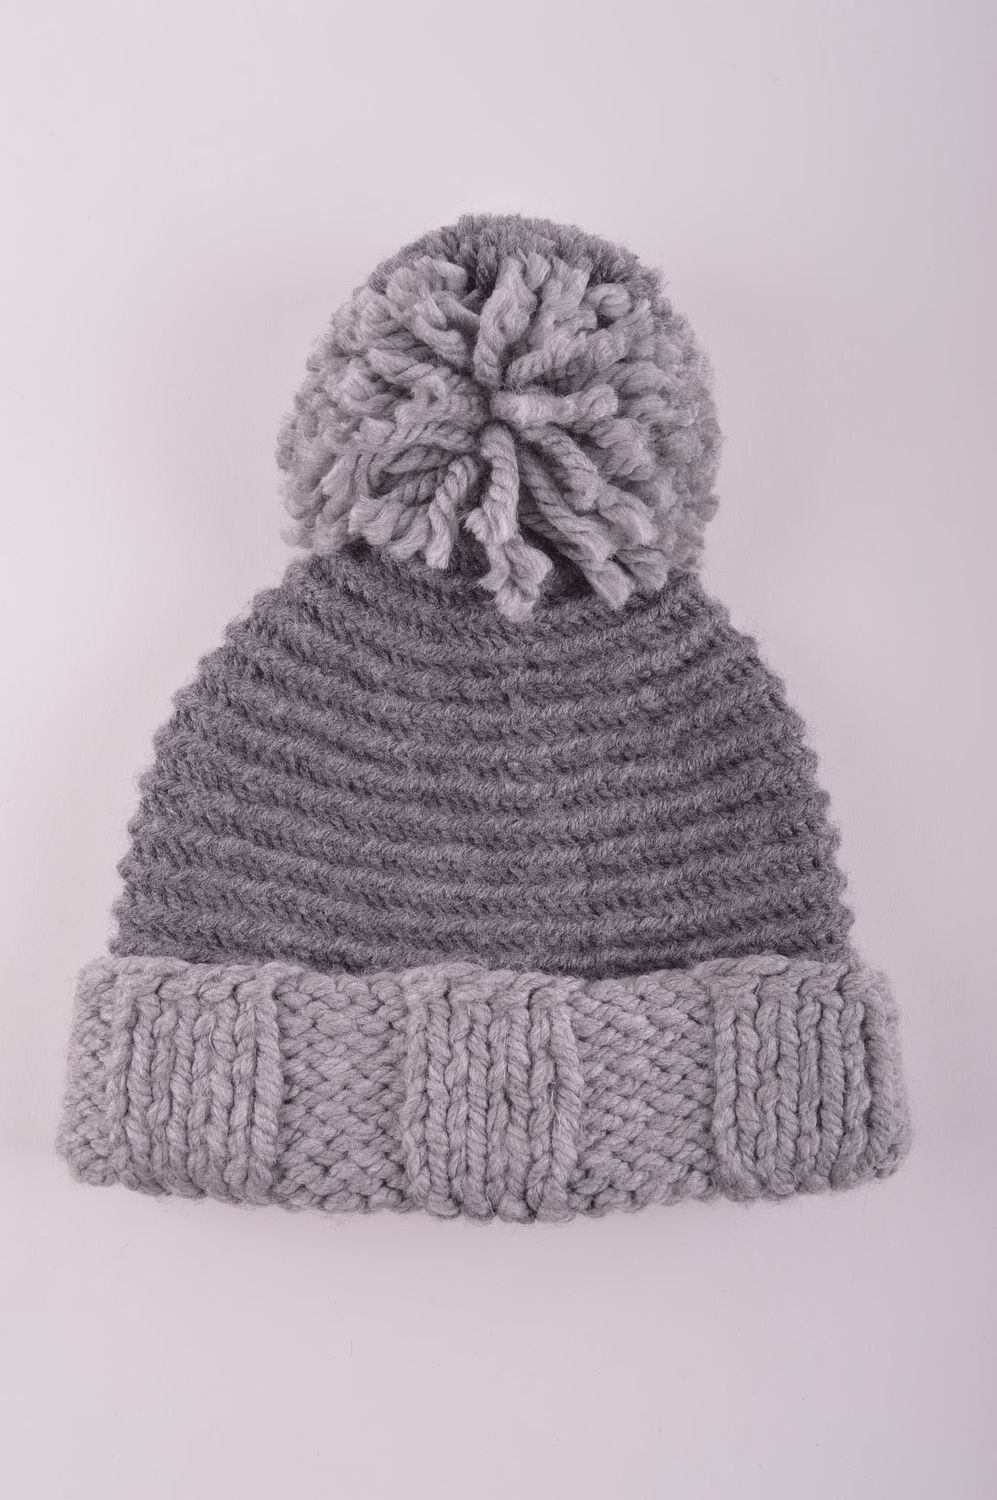 Handmade woolen winter hat hand-knitted hat winter accessories warm hat photo 4